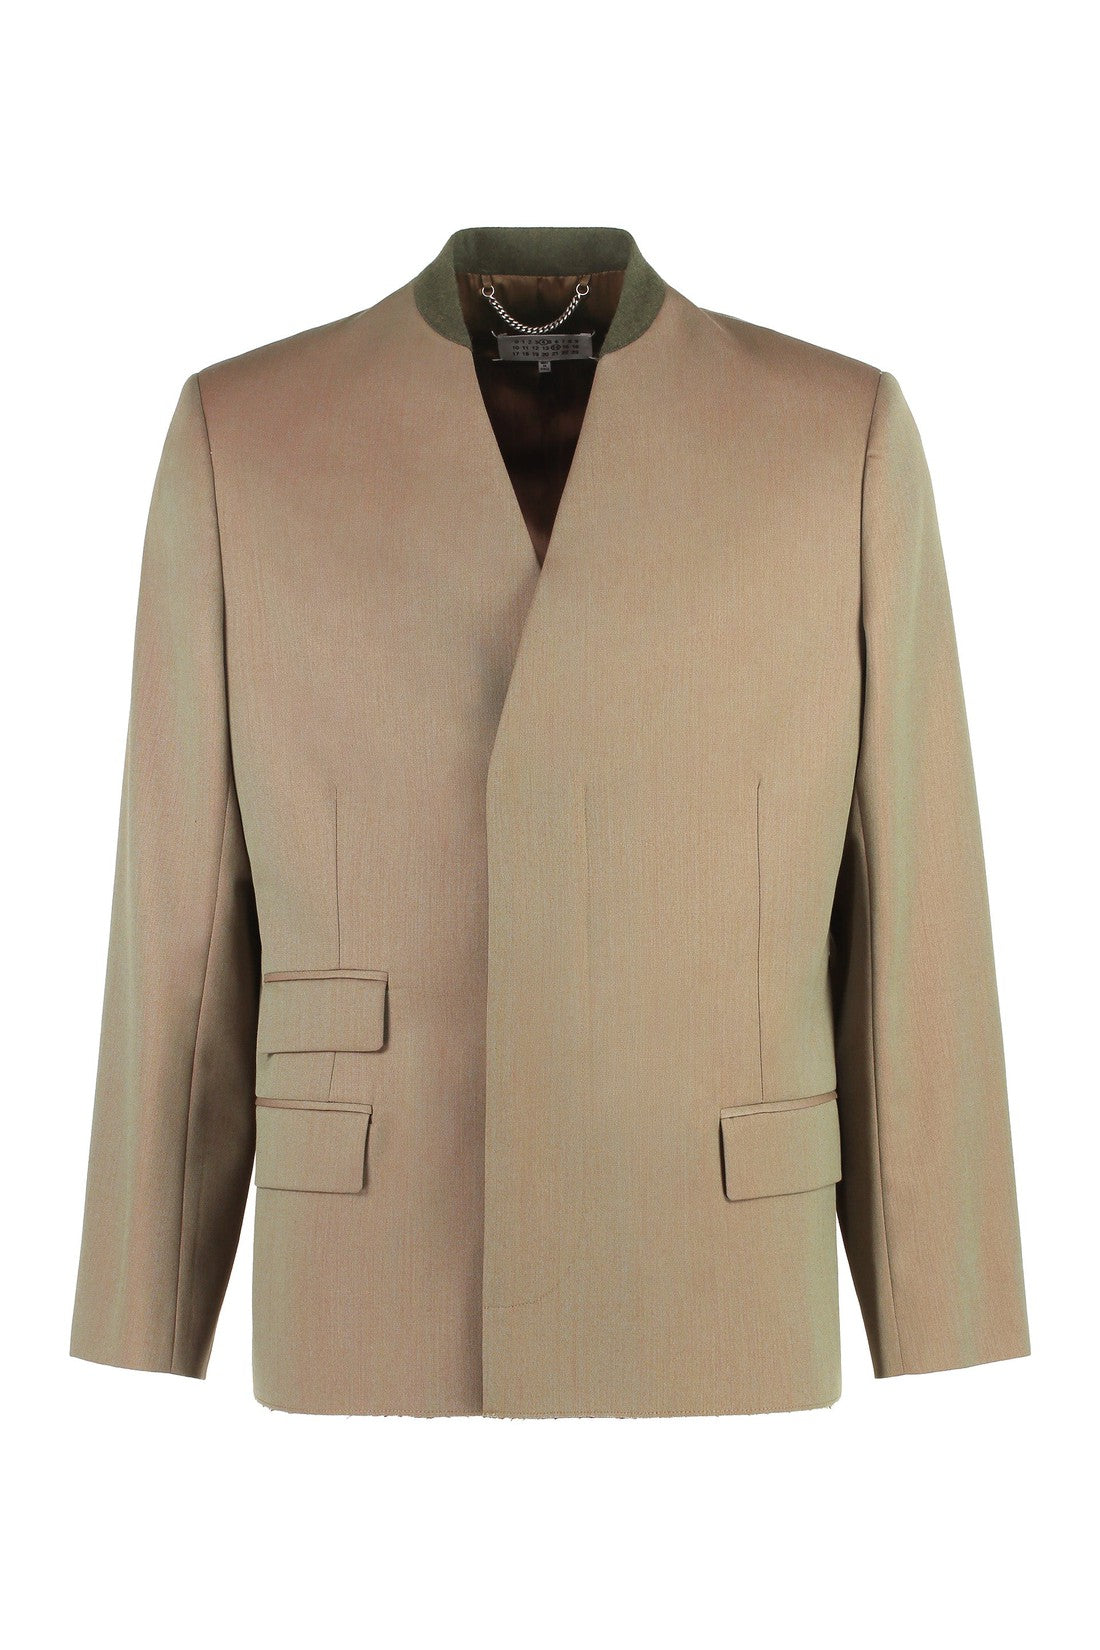 Maison Margiela-OUTLET-SALE-Wool blend blazer-ARCHIVIST